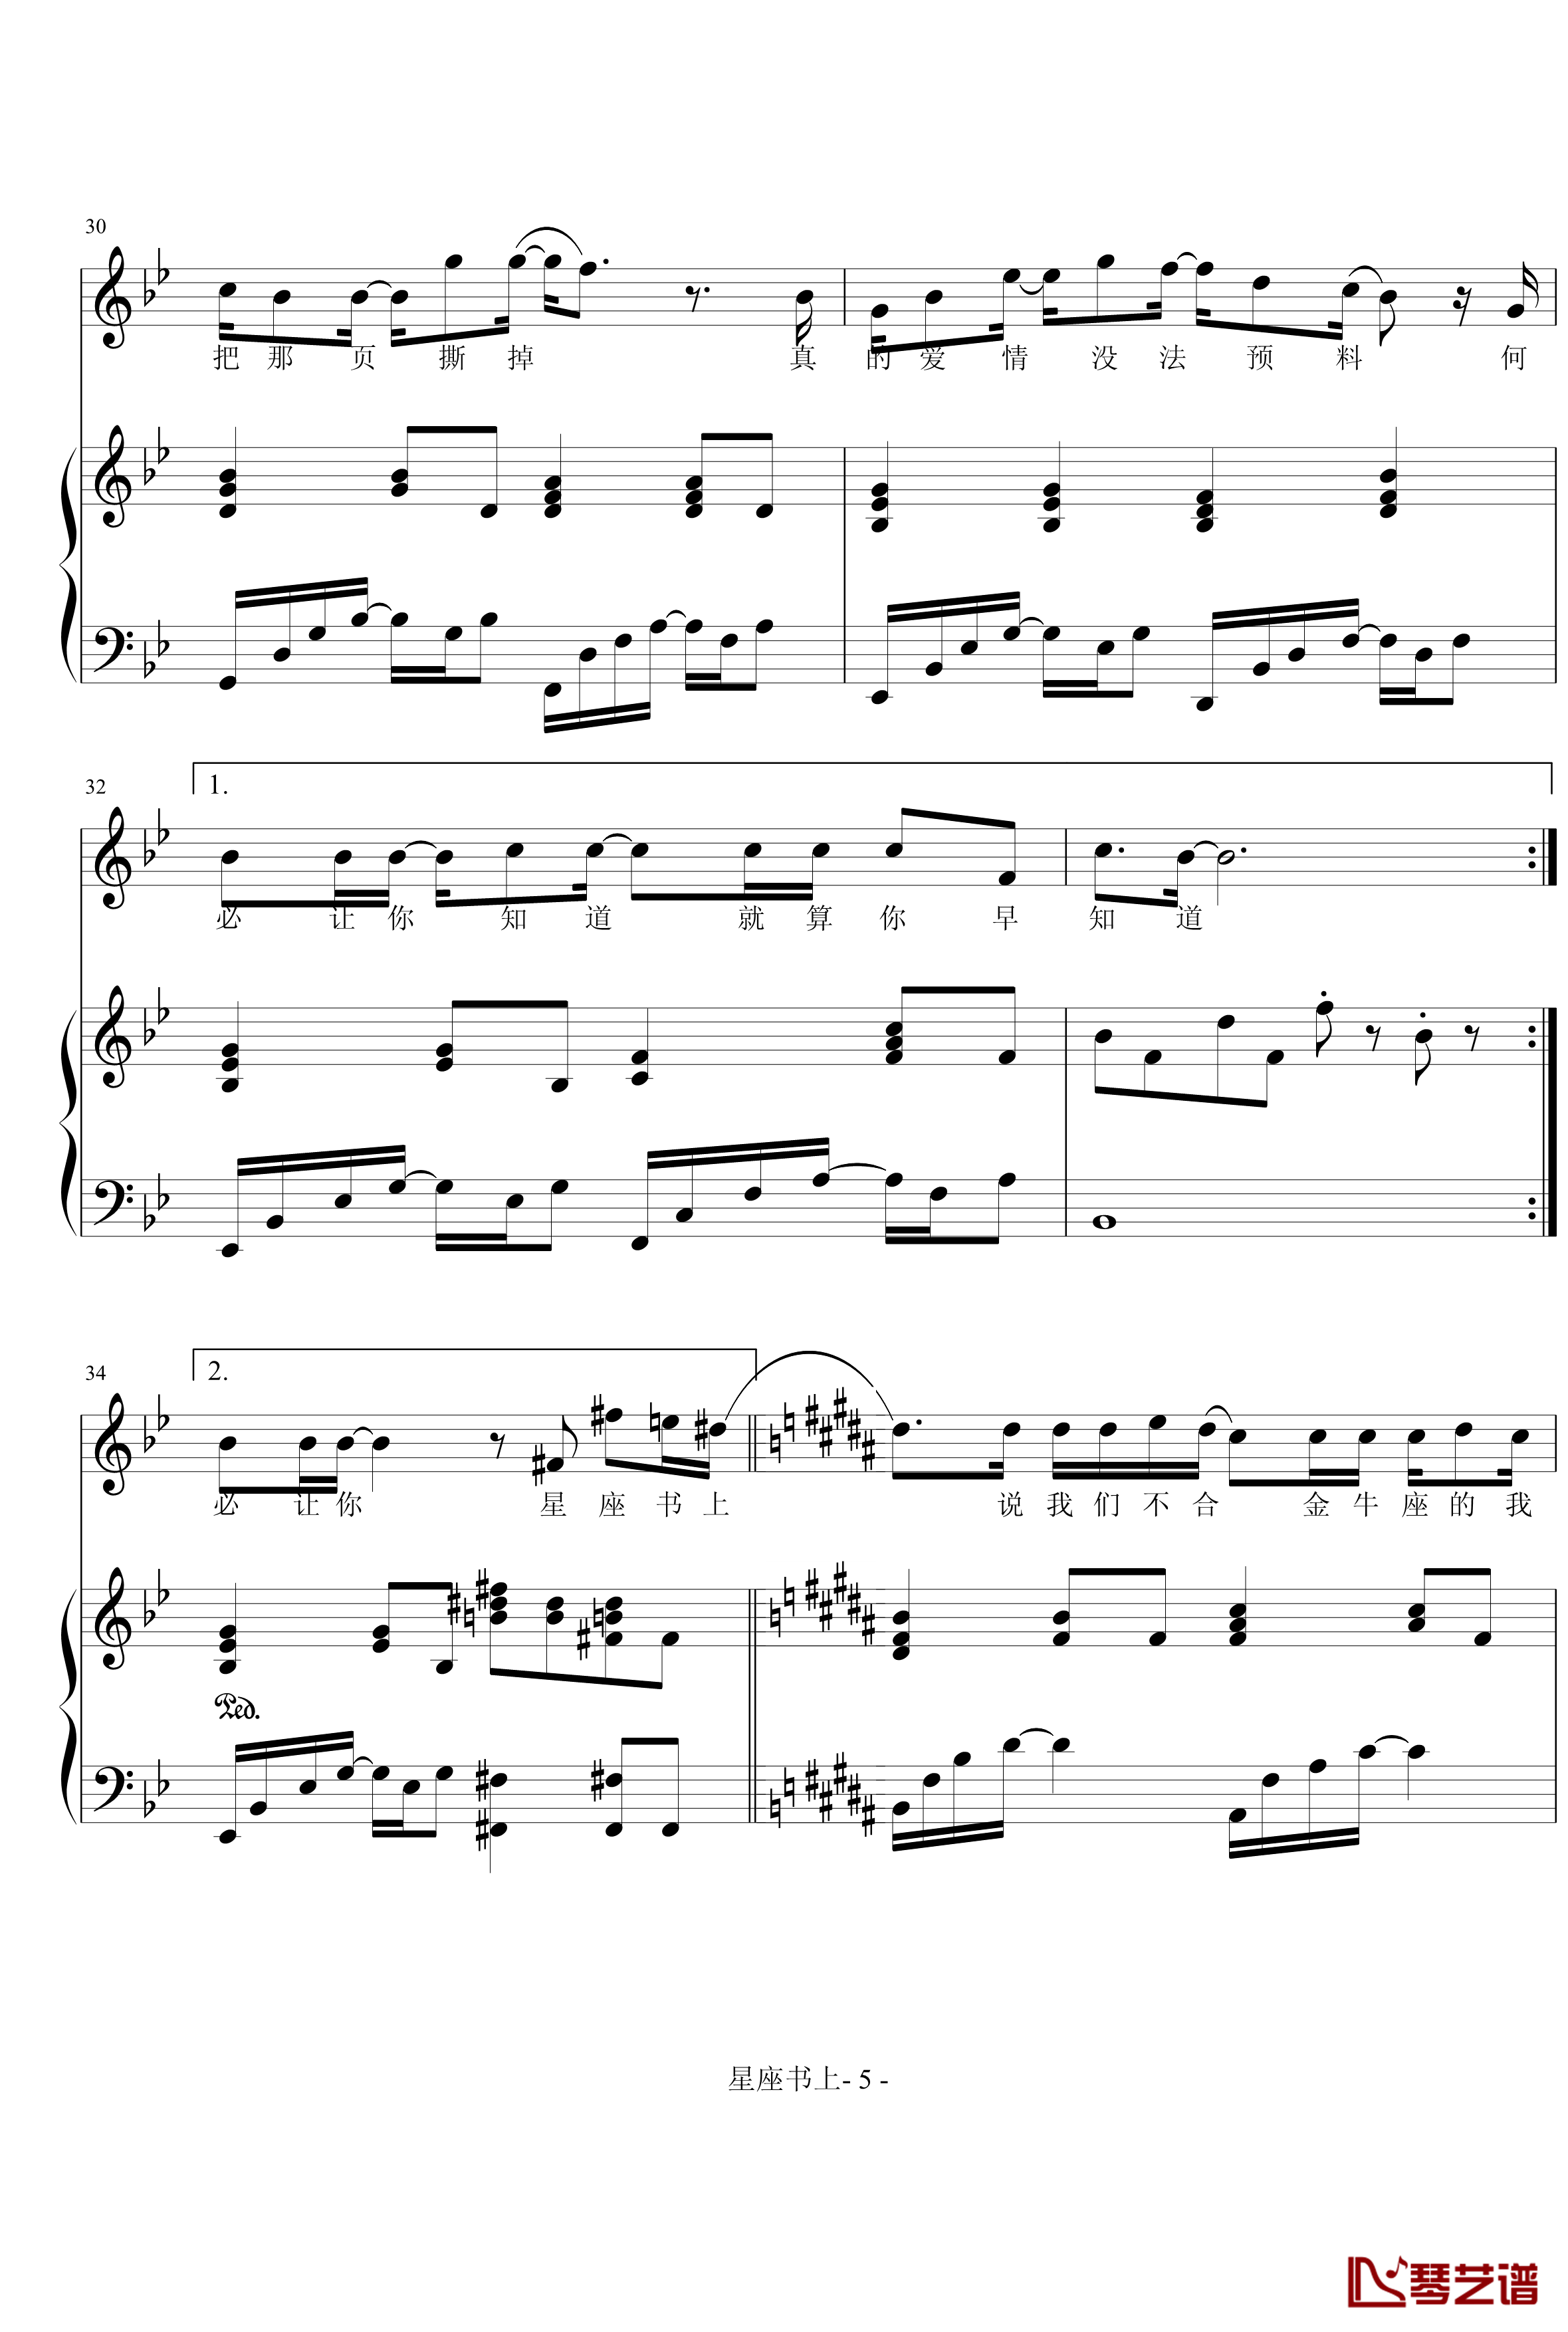 愤怒的小鸟交响曲第三乐章Op.5 no.3钢琴谱-1057257850